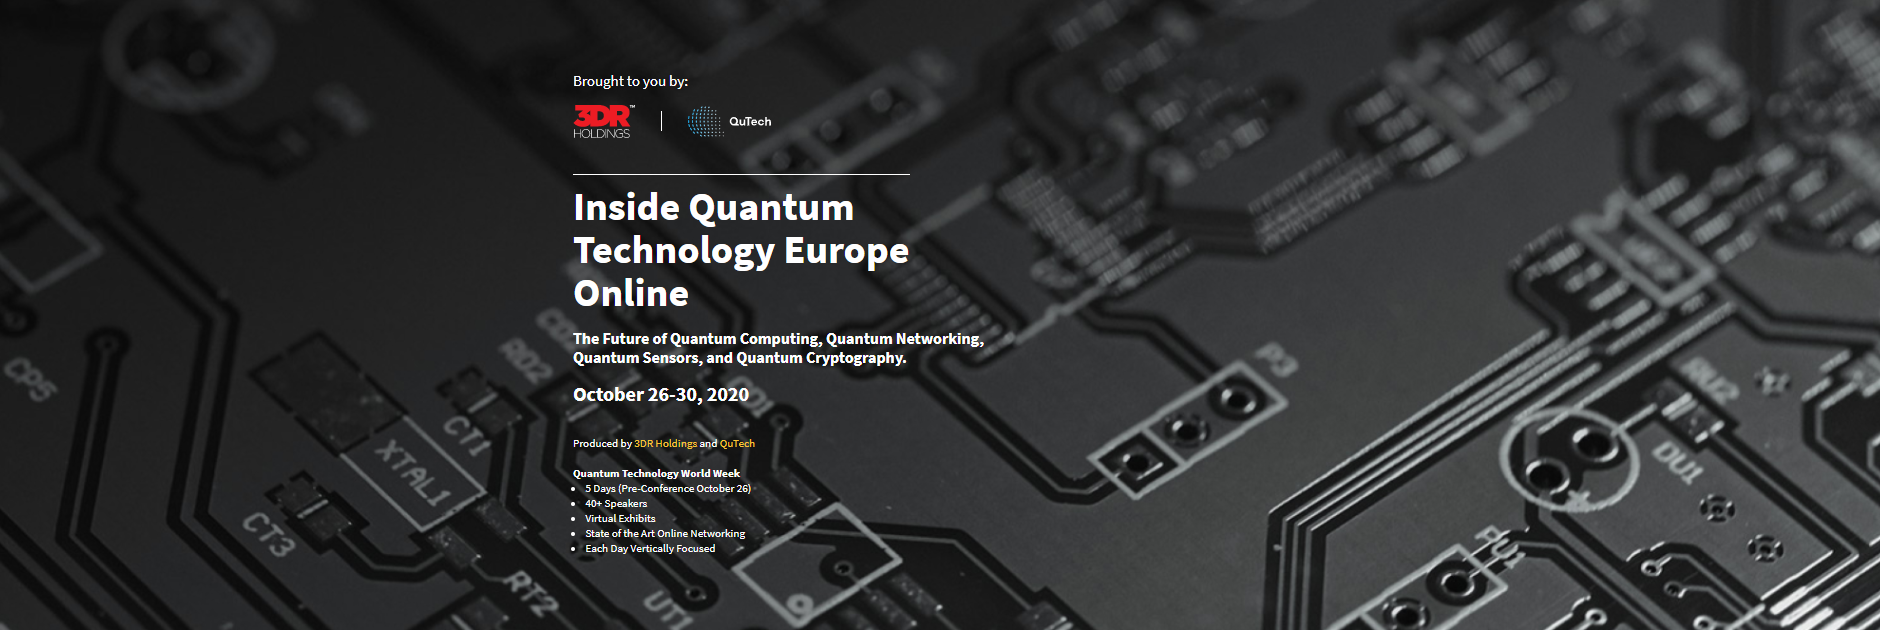 IQT Europe: Inside Quantum Technology Europe Online